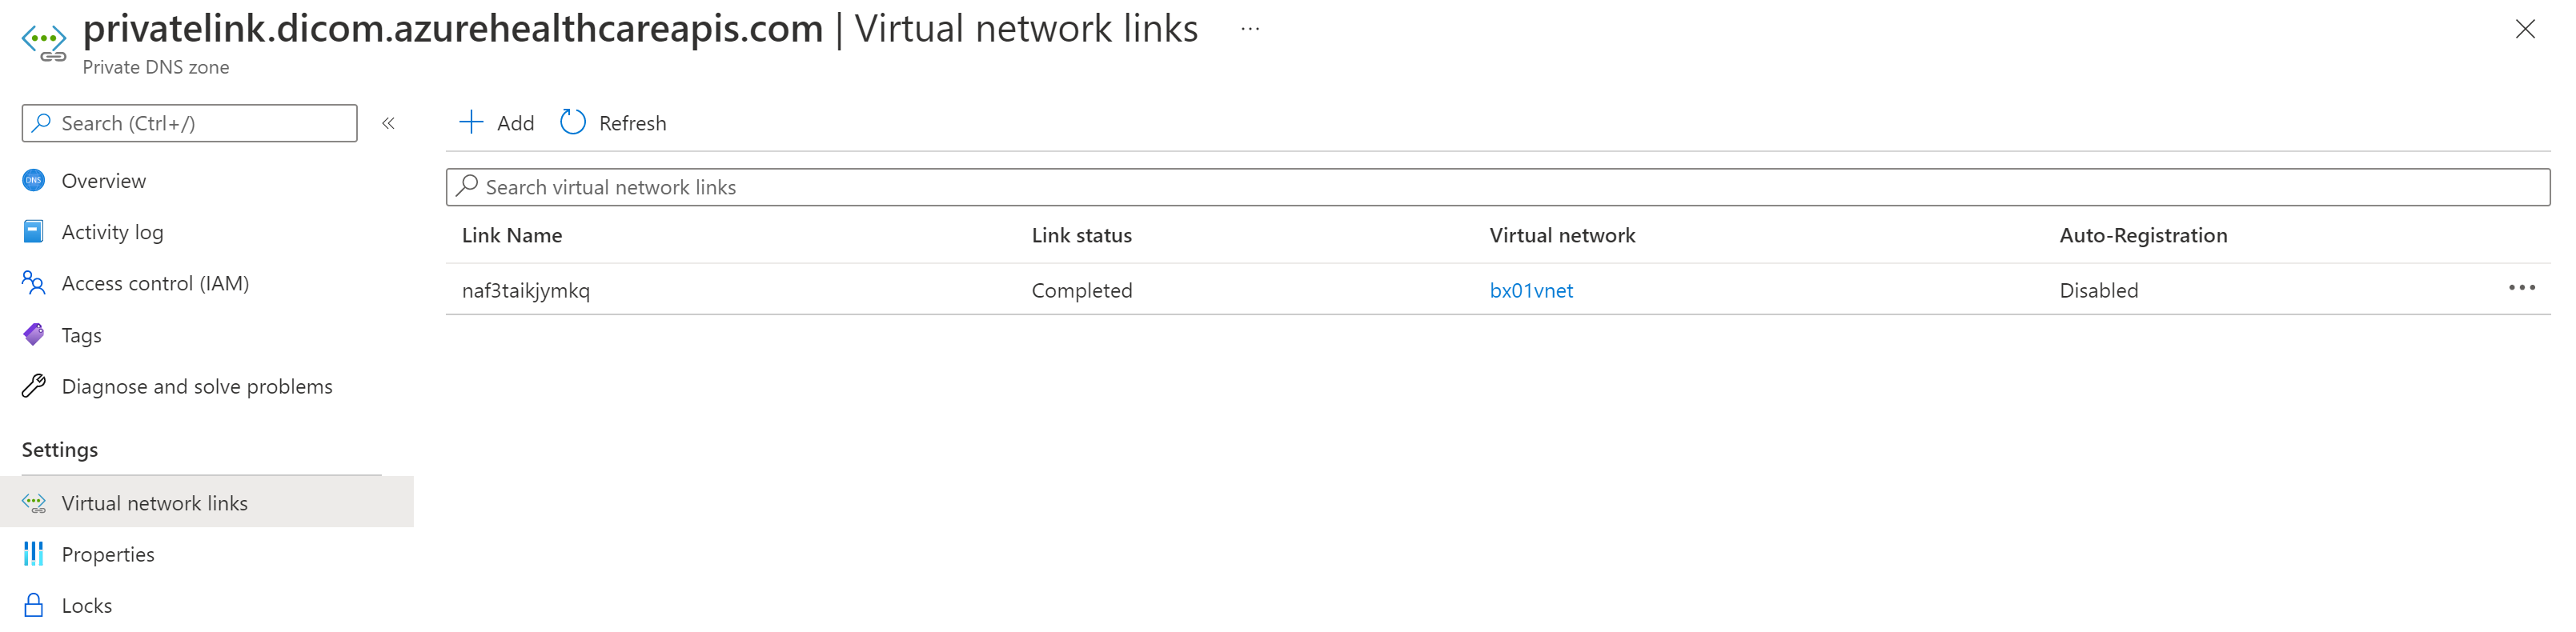 显示专用链接虚拟网络链接 DICOM 的图像的屏幕截图。